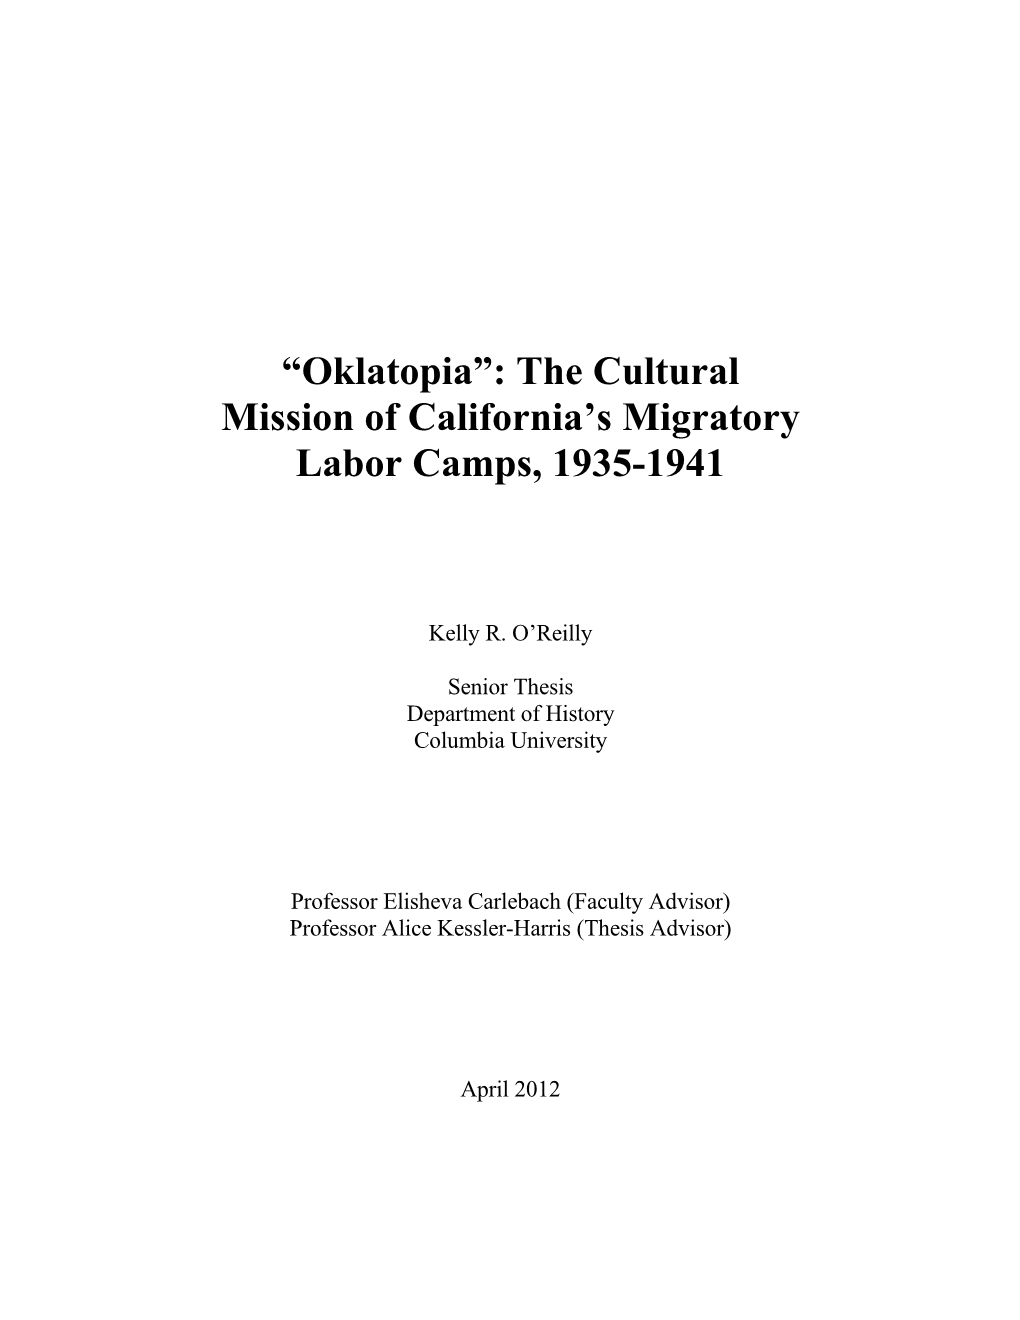 “Oklatopia”: the Cultural Mission of California's Migratory Labor Camps, 1935-1941